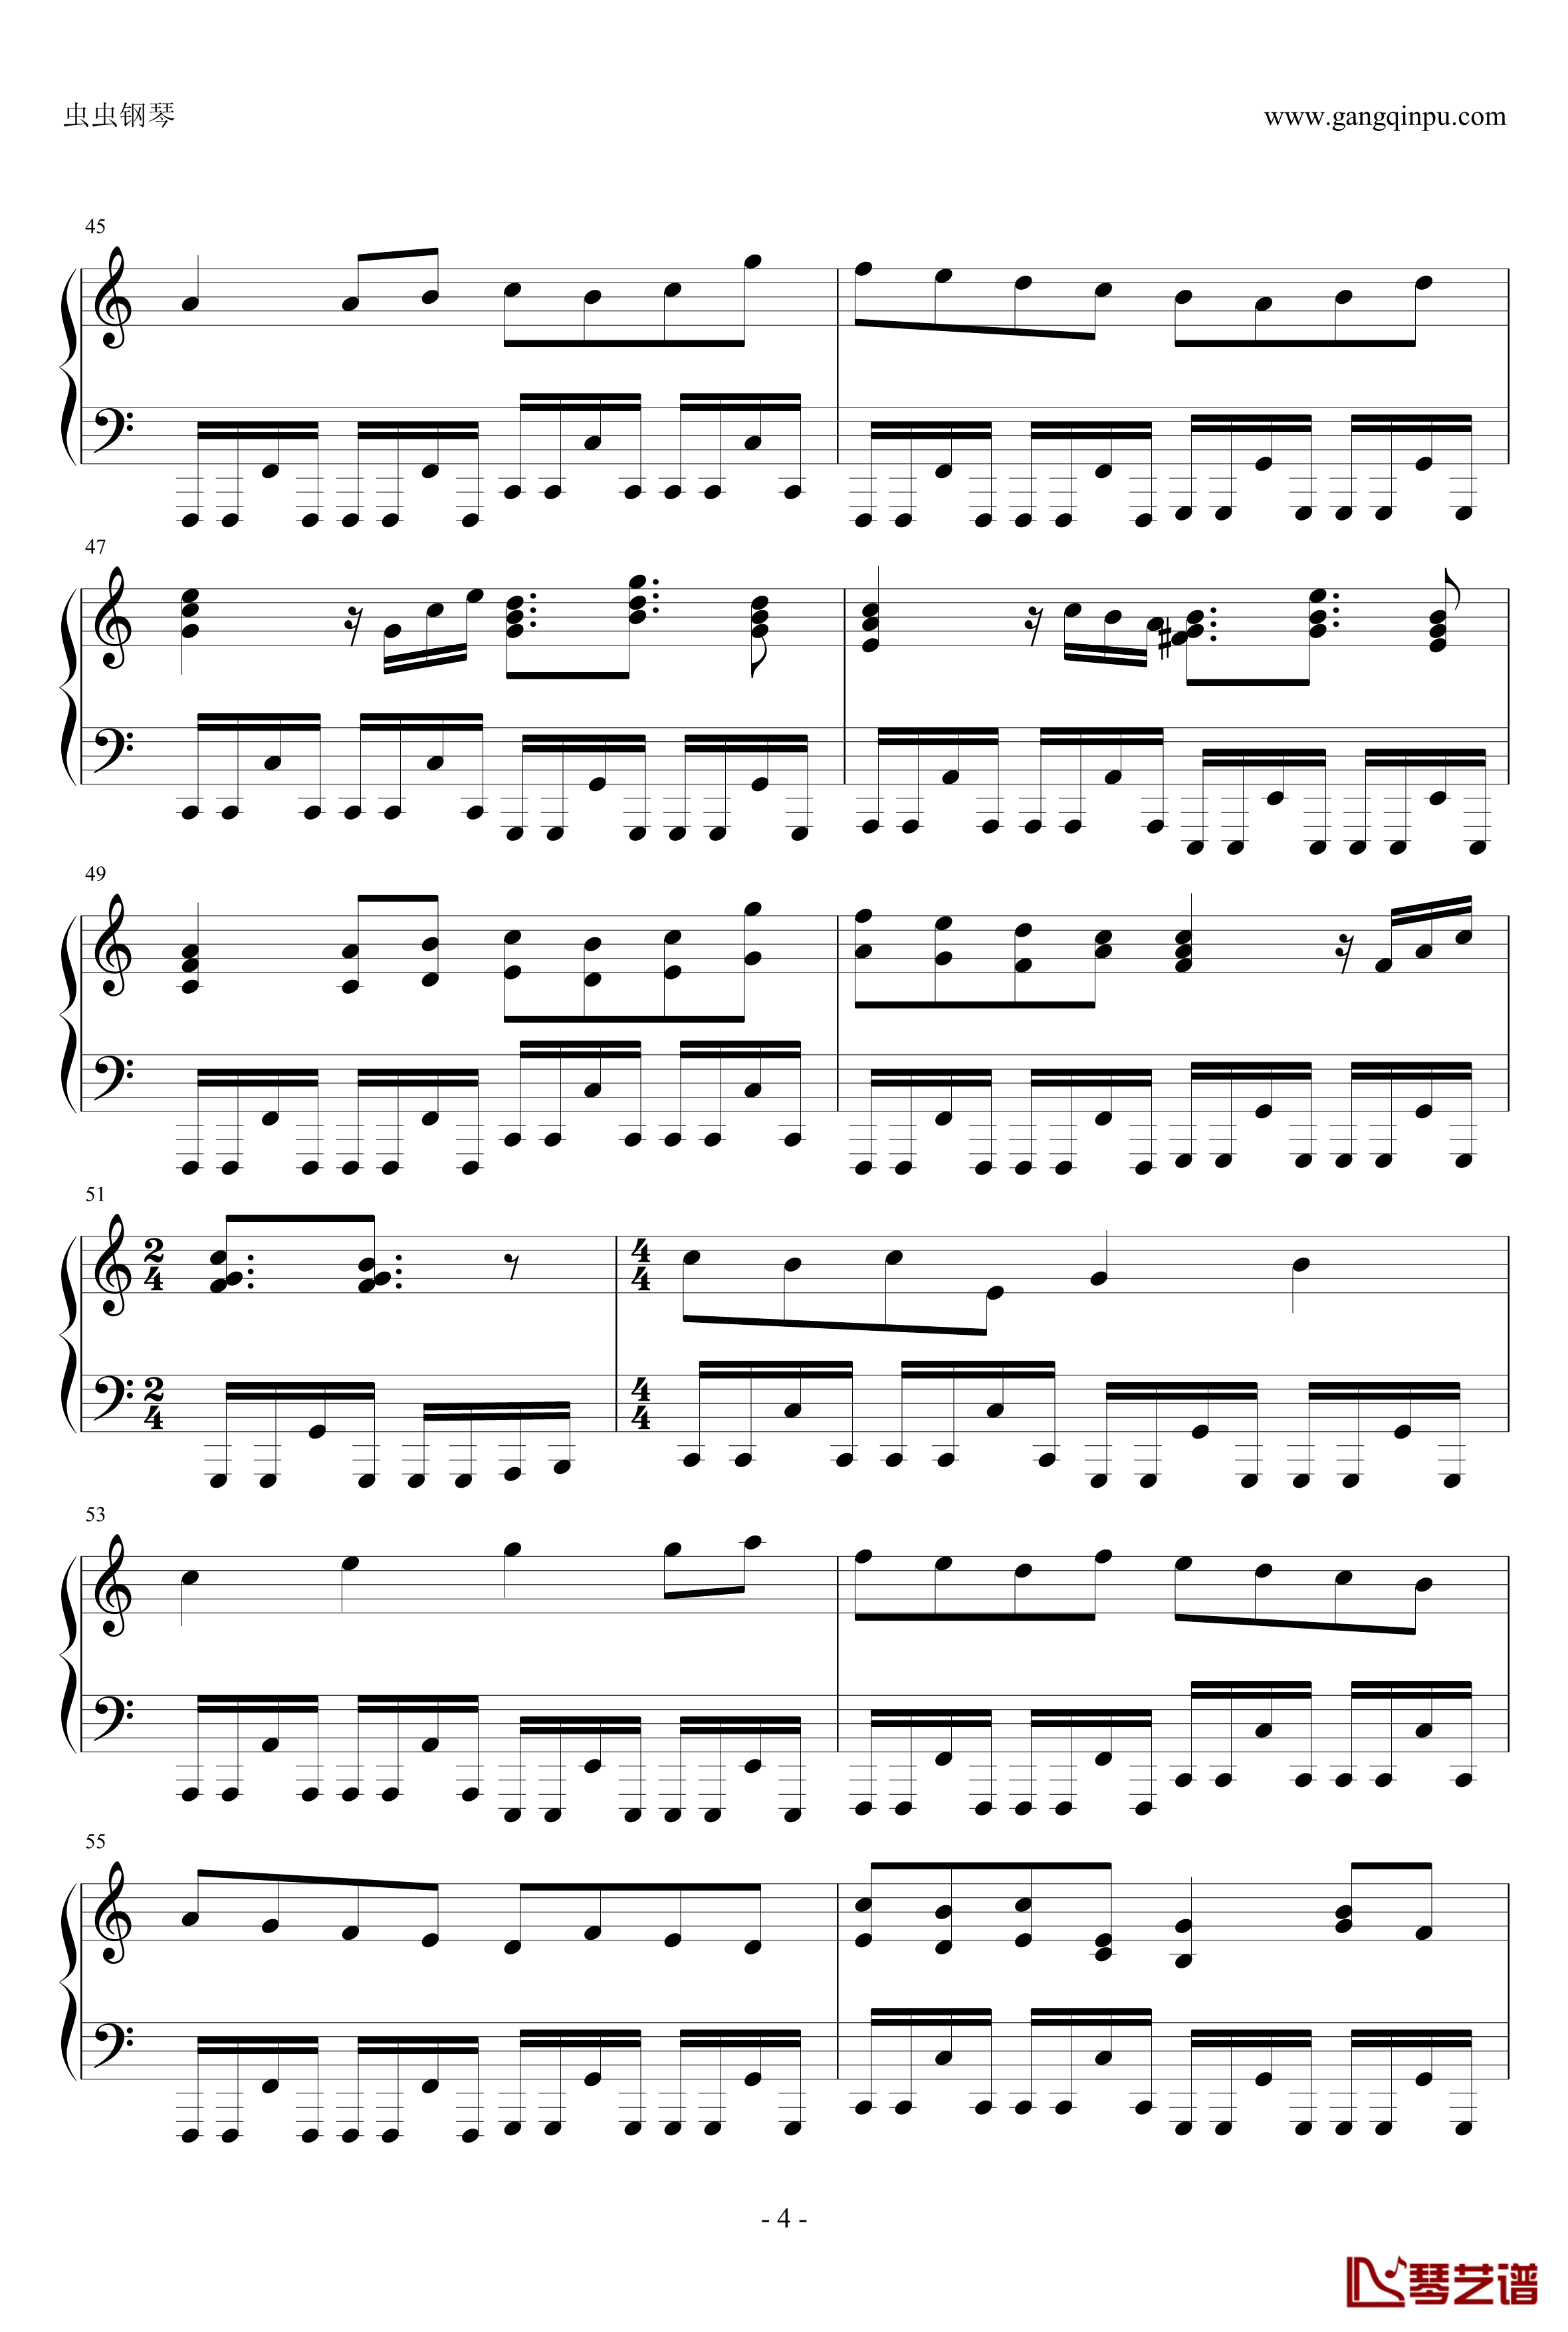 卡农疯狂摇滚版钢琴谱-约翰·巴哈贝尔4